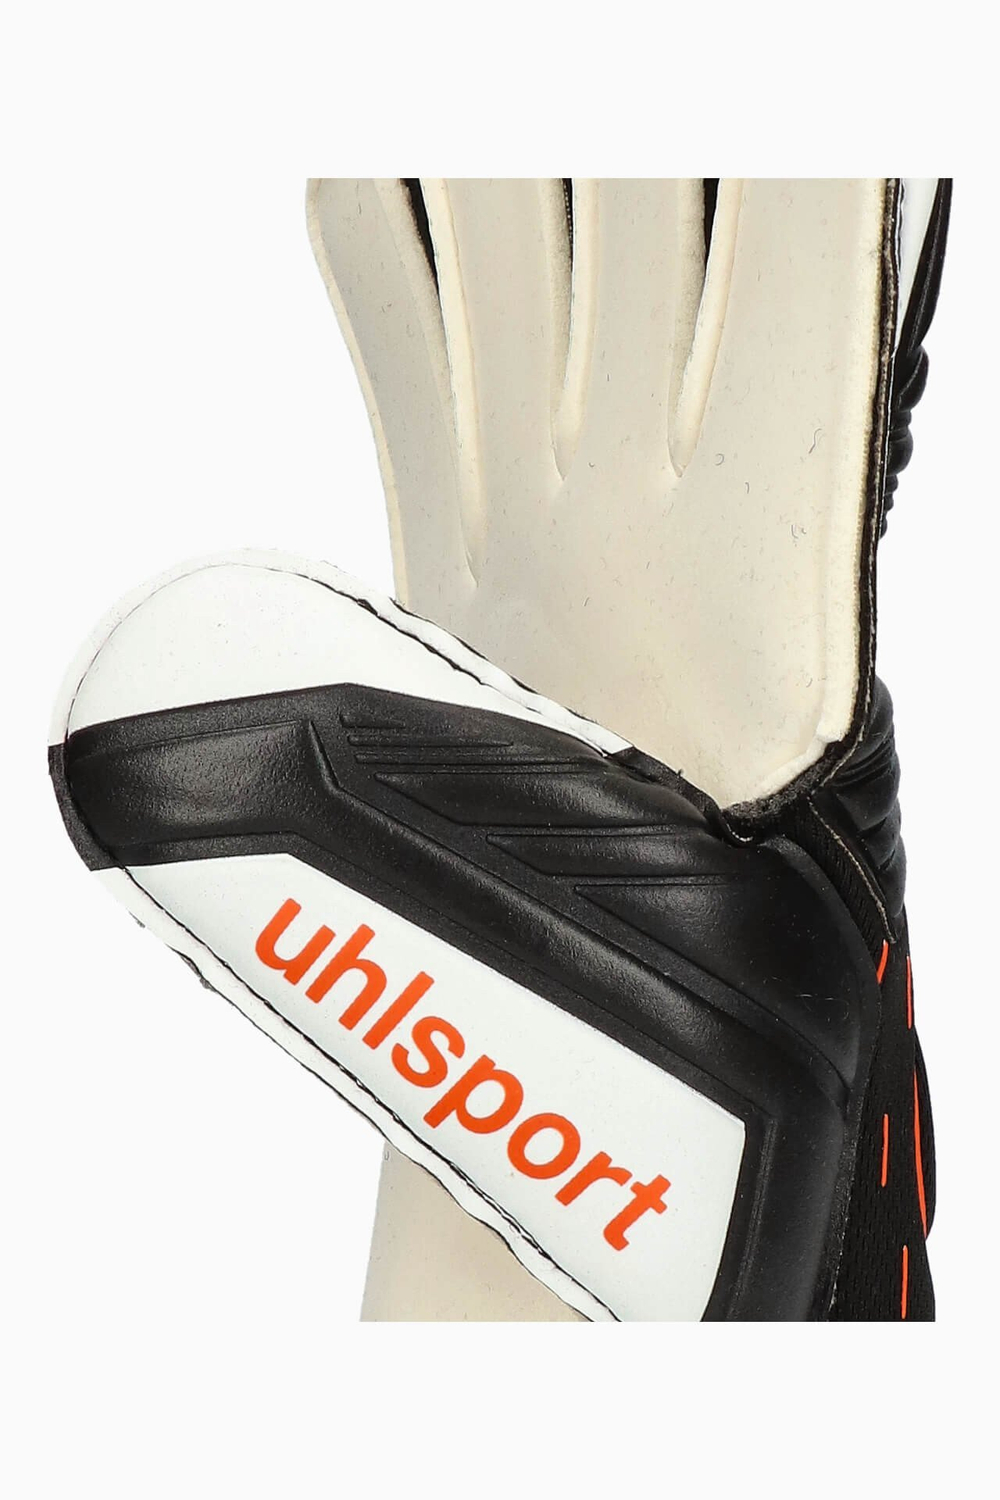 Вратарские перчатки Uhlsport Speed Contact Soft Pro